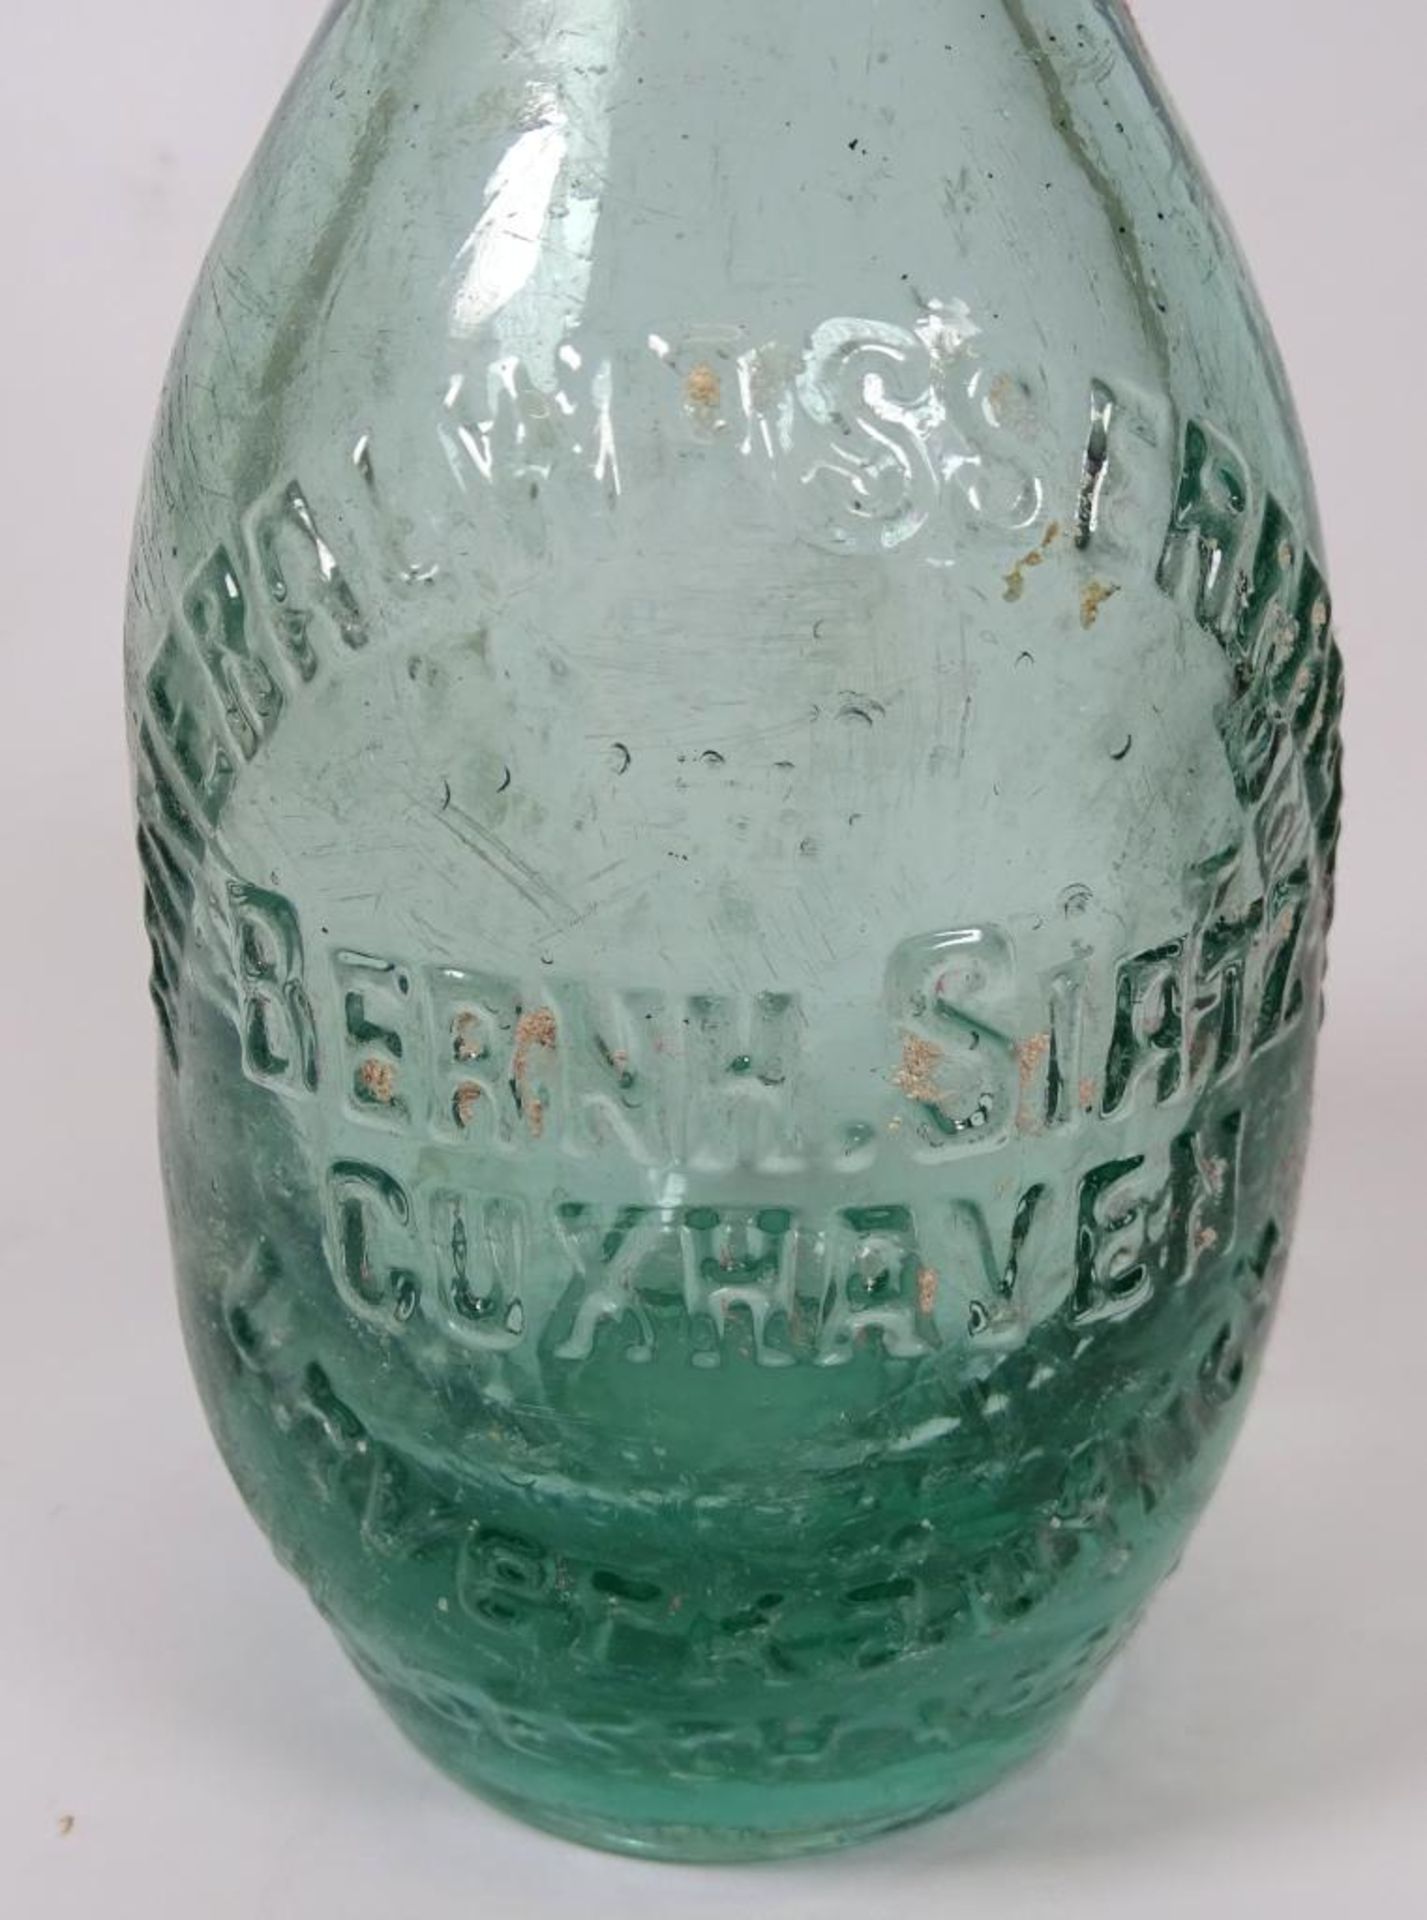 Glasflasche,"Mineralwasserfabrik Bernh.Siatz-Cuxhaven","unverkäuflich",nummeriert,H-18,5cm,Alters- - Bild 3 aus 4